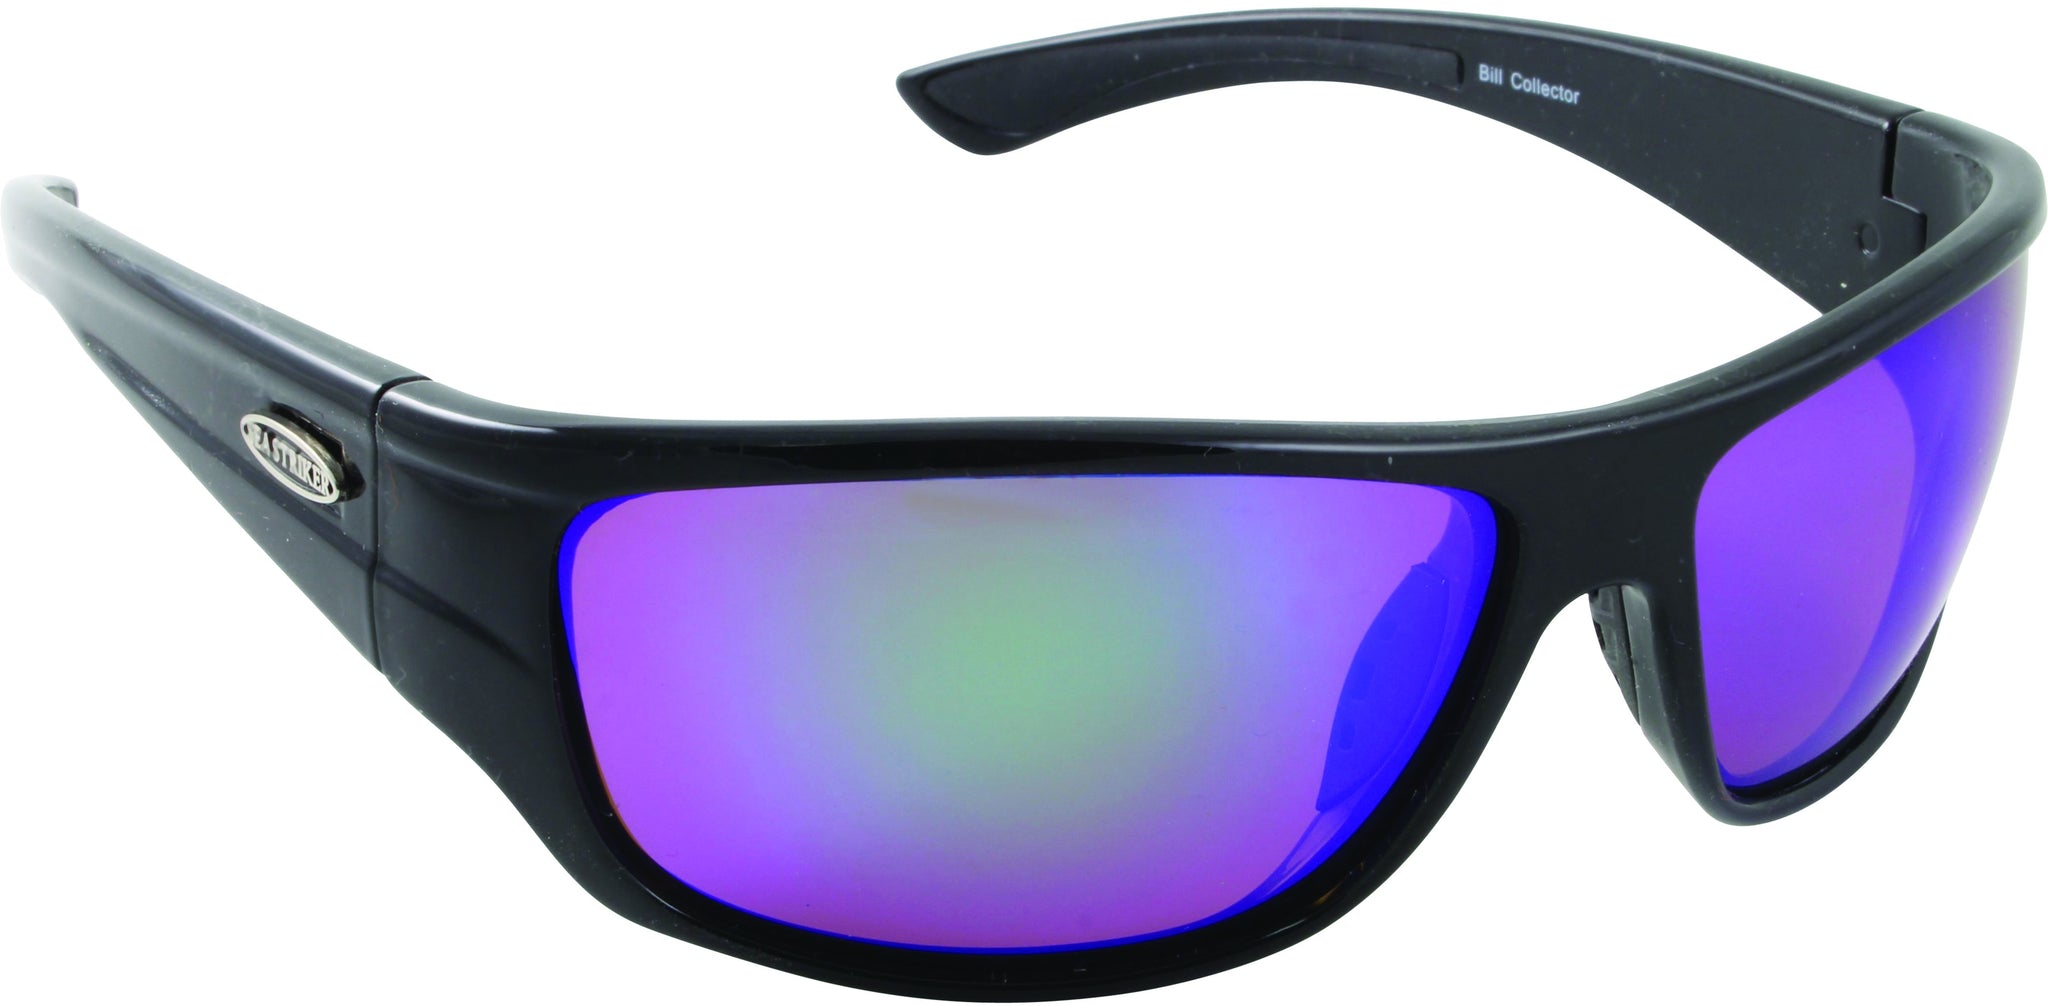 Sea Striker 226 Bill Collector Sunglasses Black Frame/Grn Mirror